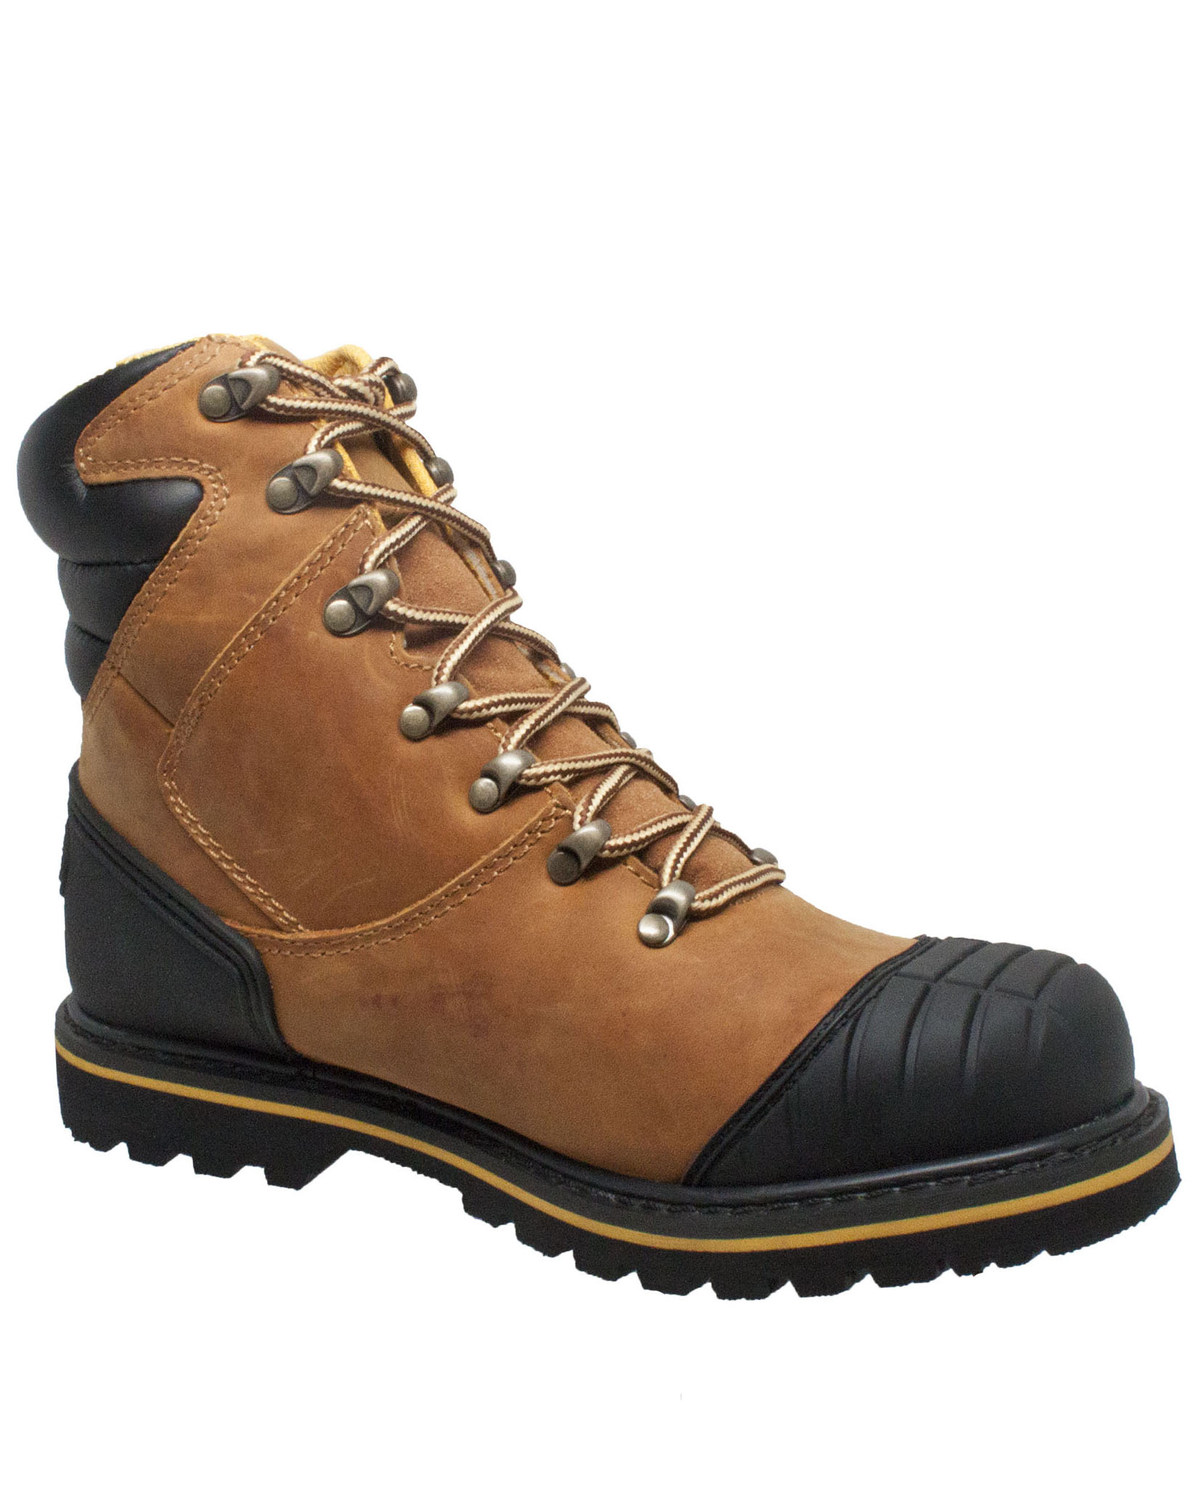 Ad Tec Men's Work Boots - Steel Toe